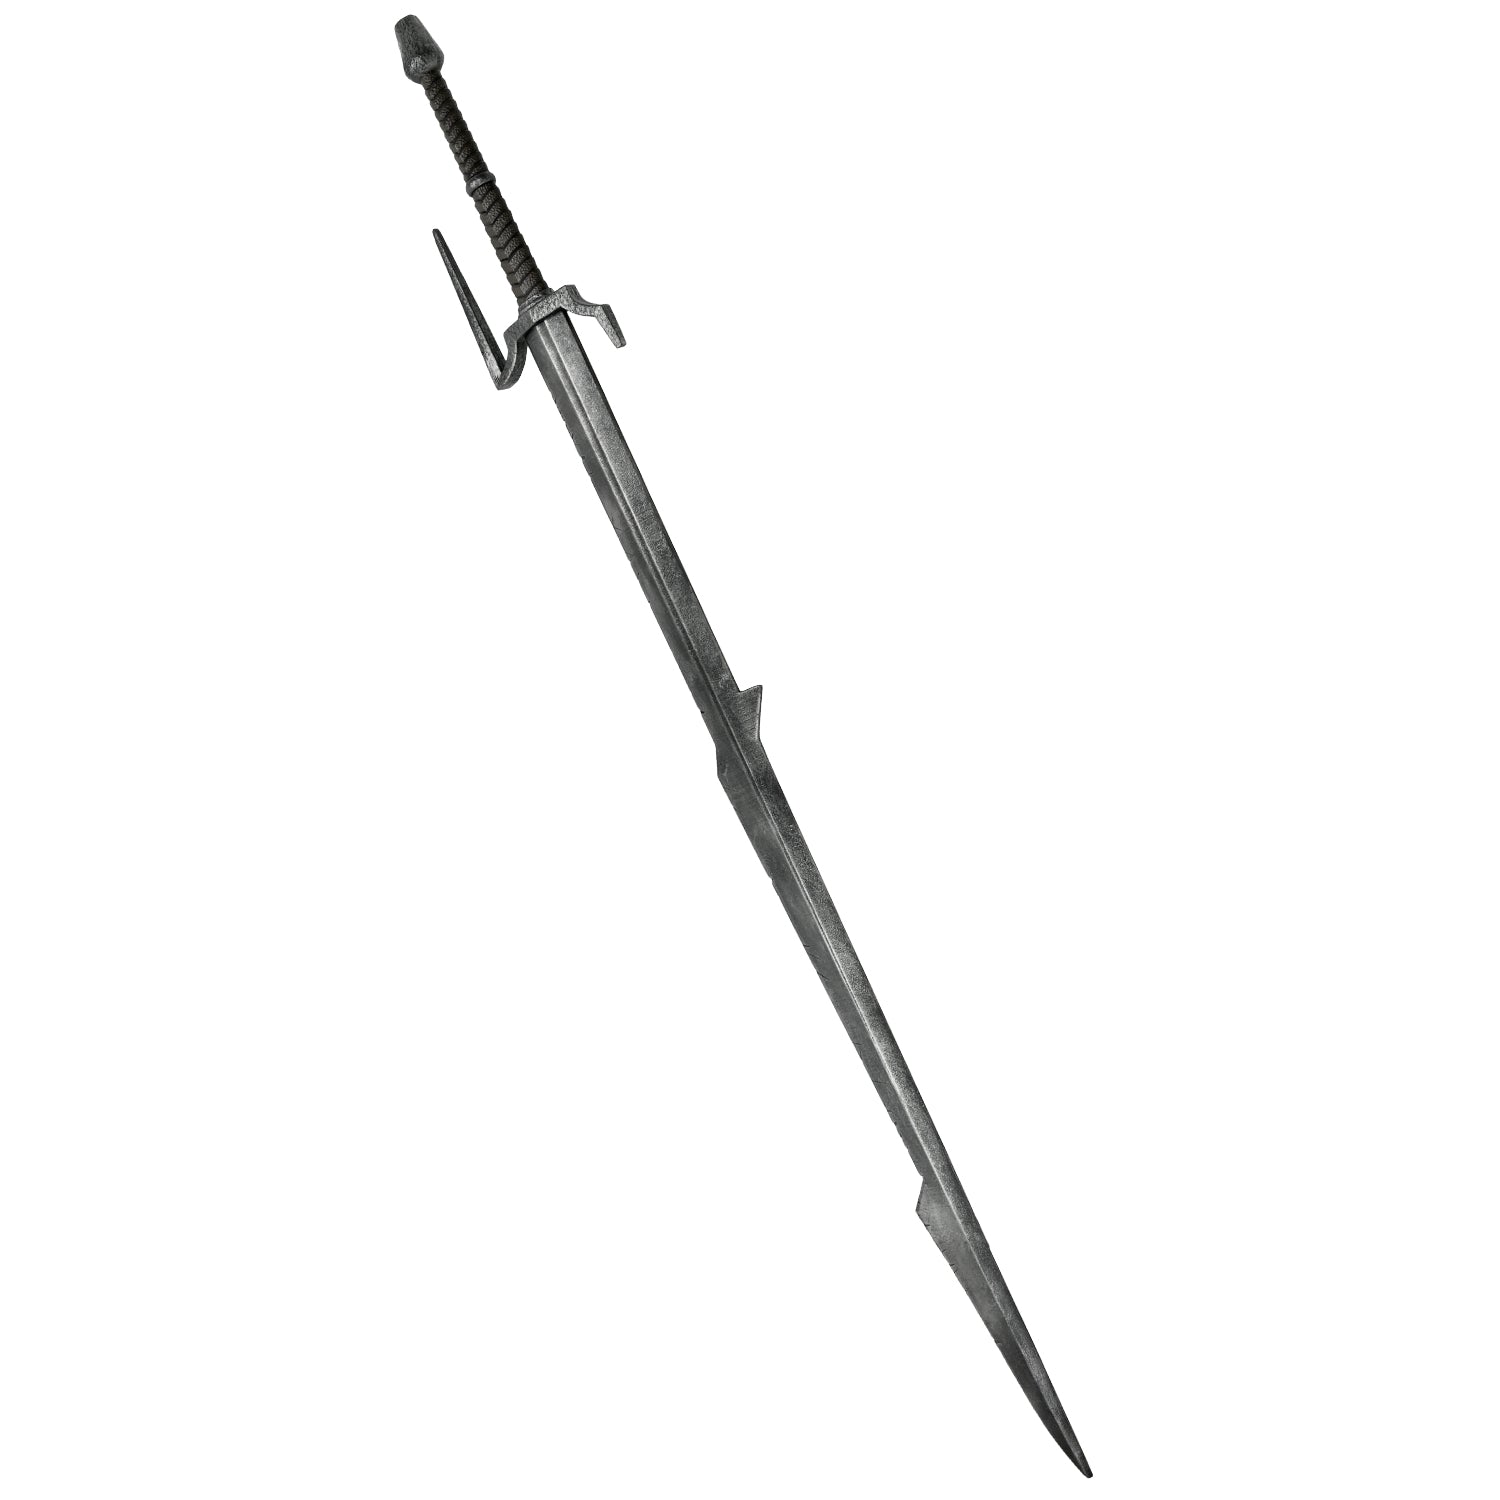 Eredin's Sword